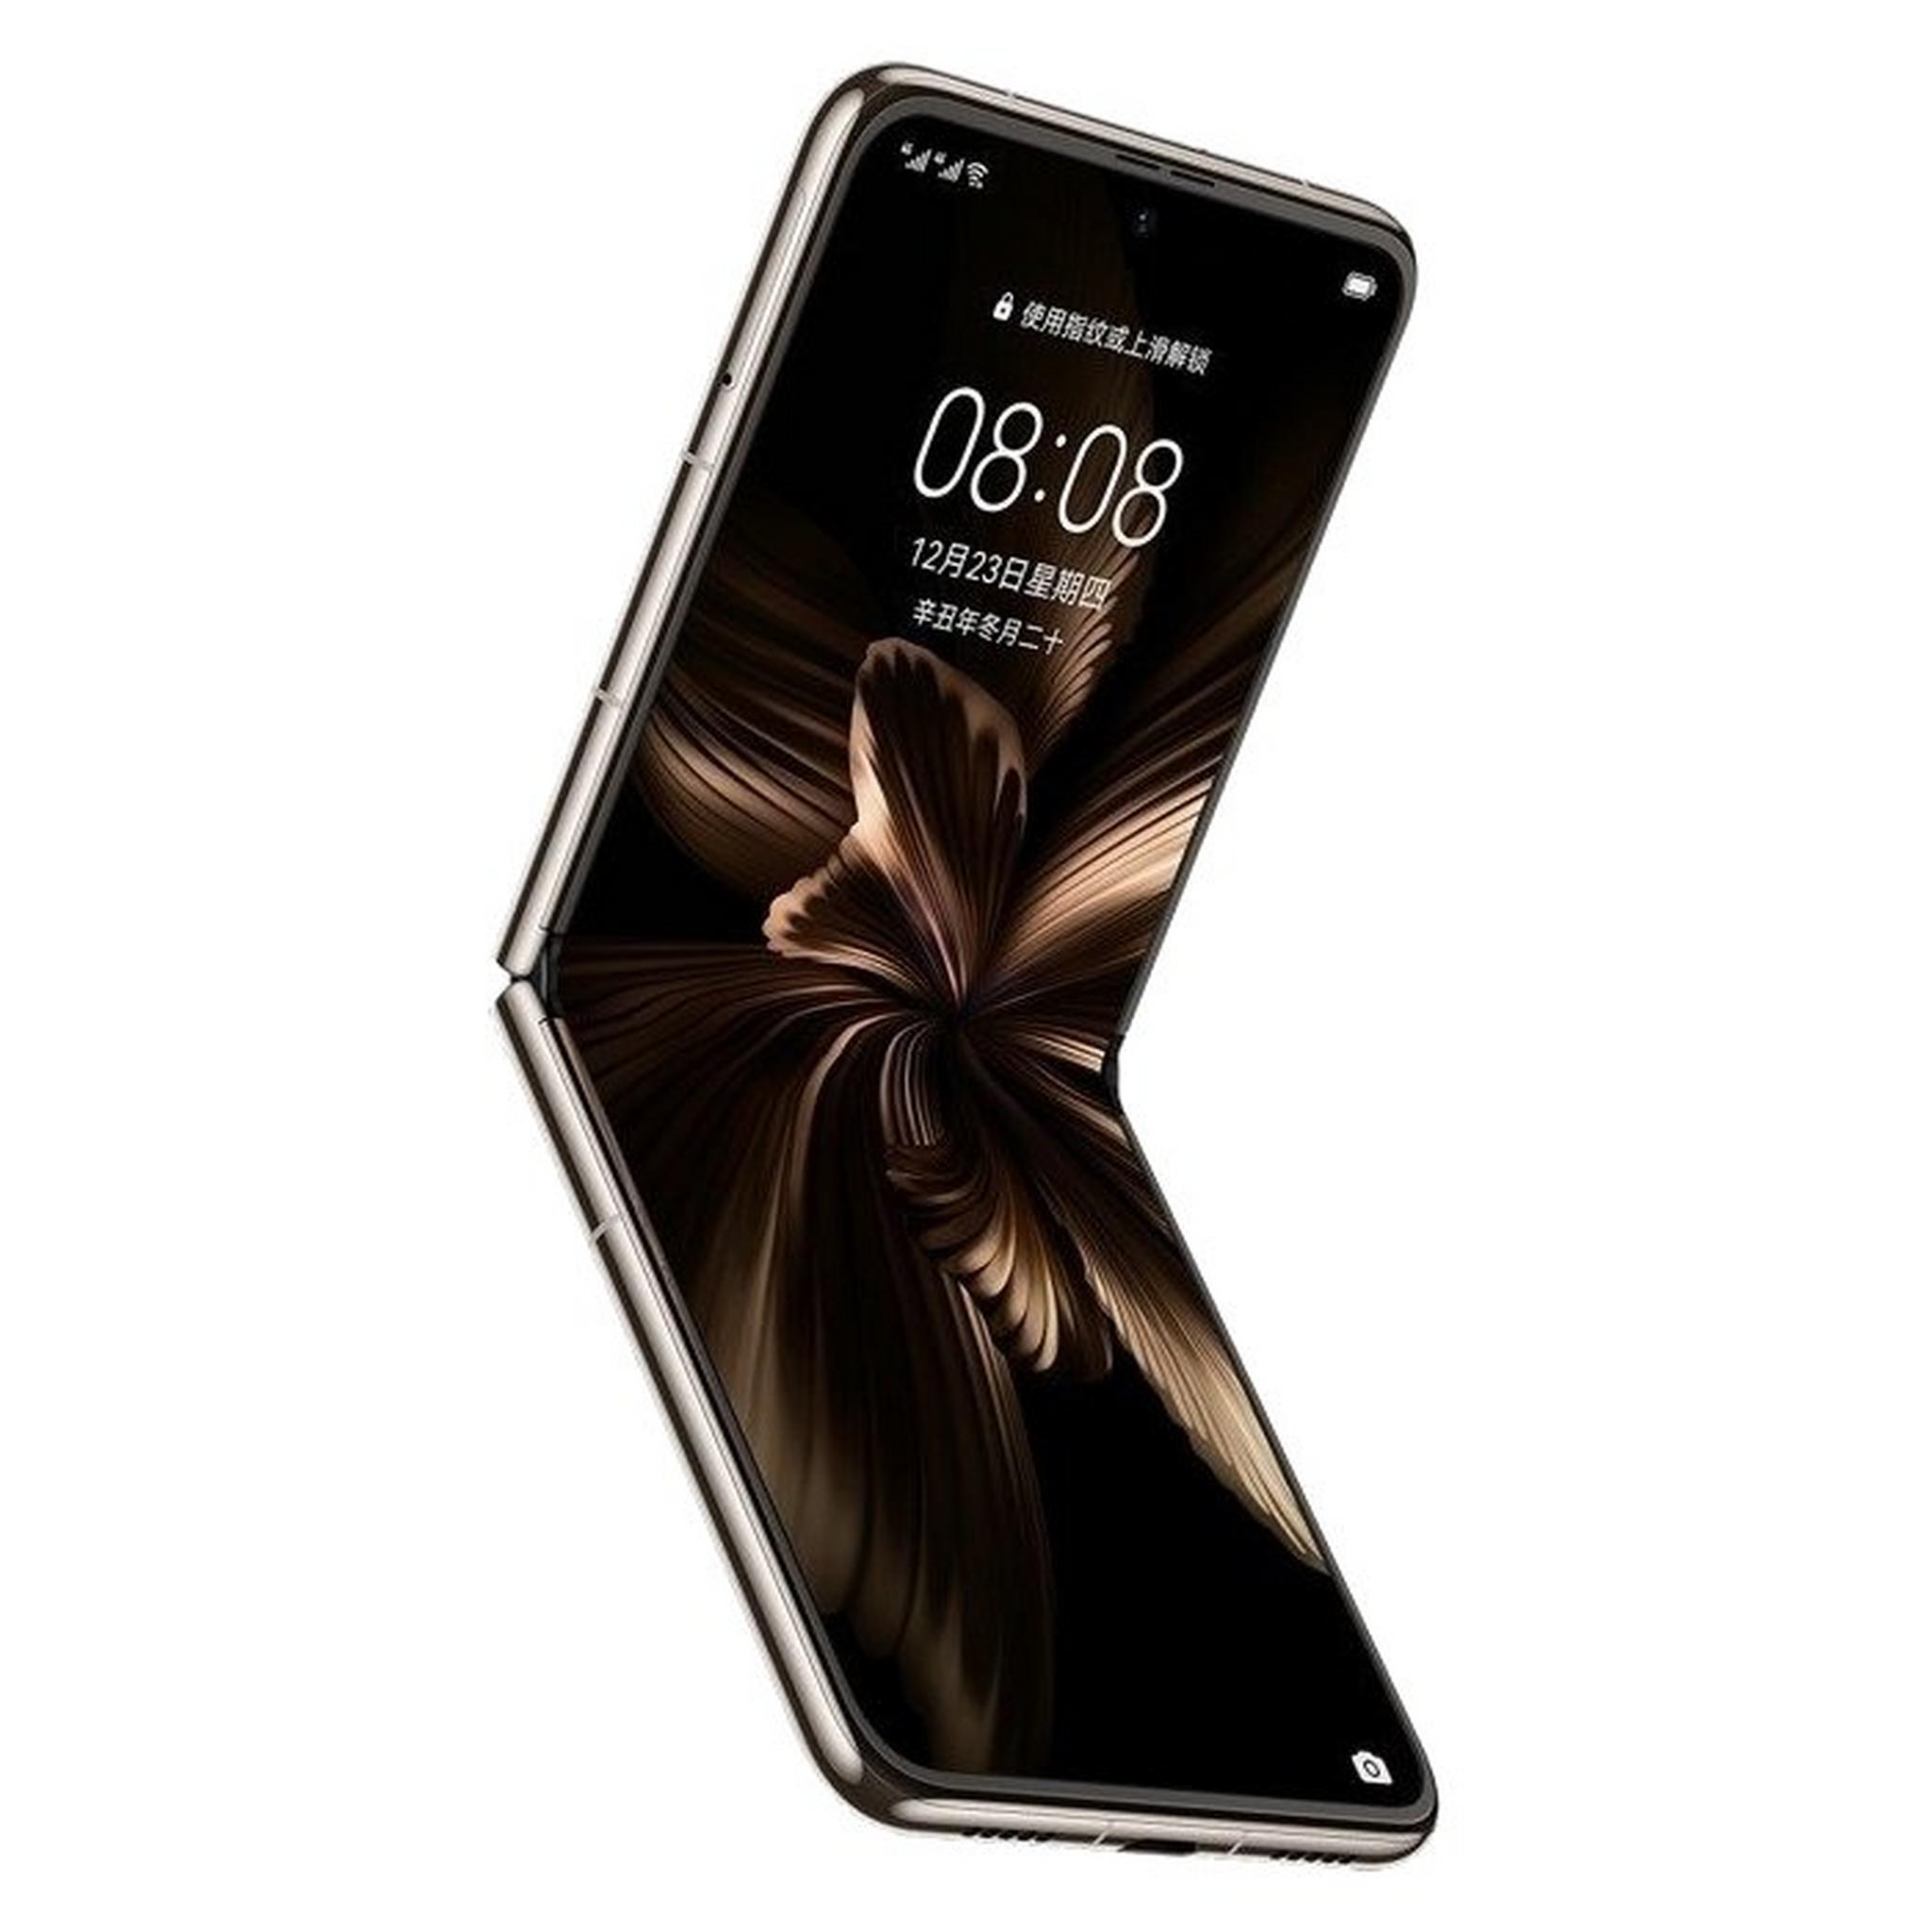 Huawei P50 Pocket  512GB Phone - Gold